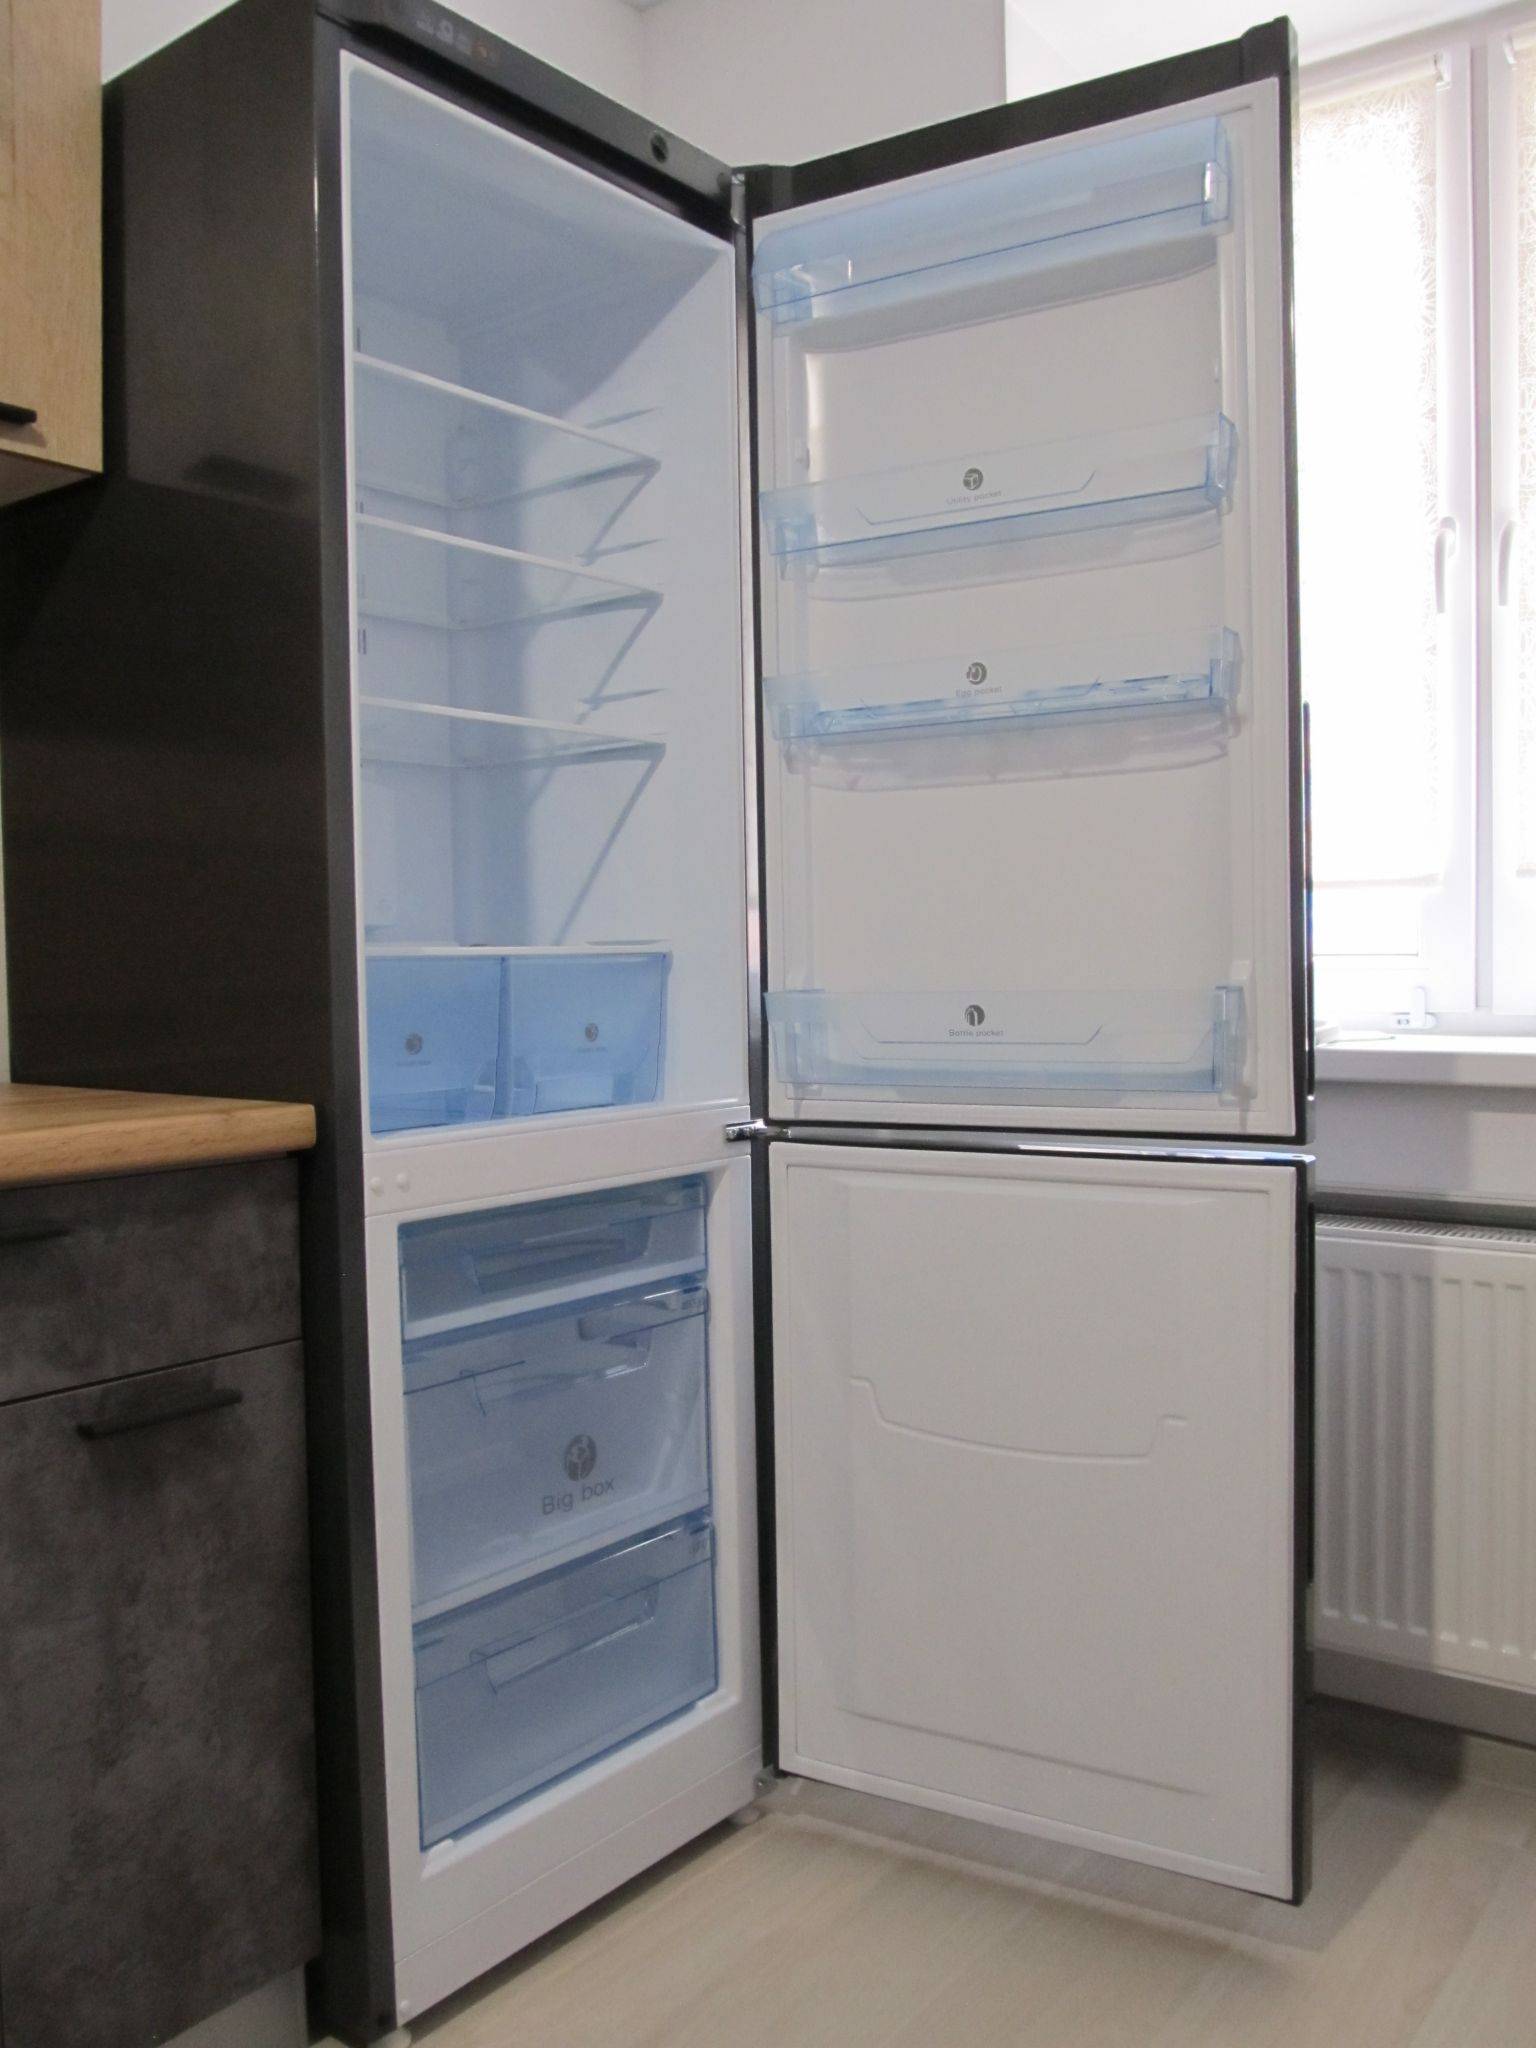 Технические характеристики, модели и отзывы о холодильниках pozis :: syl.ru